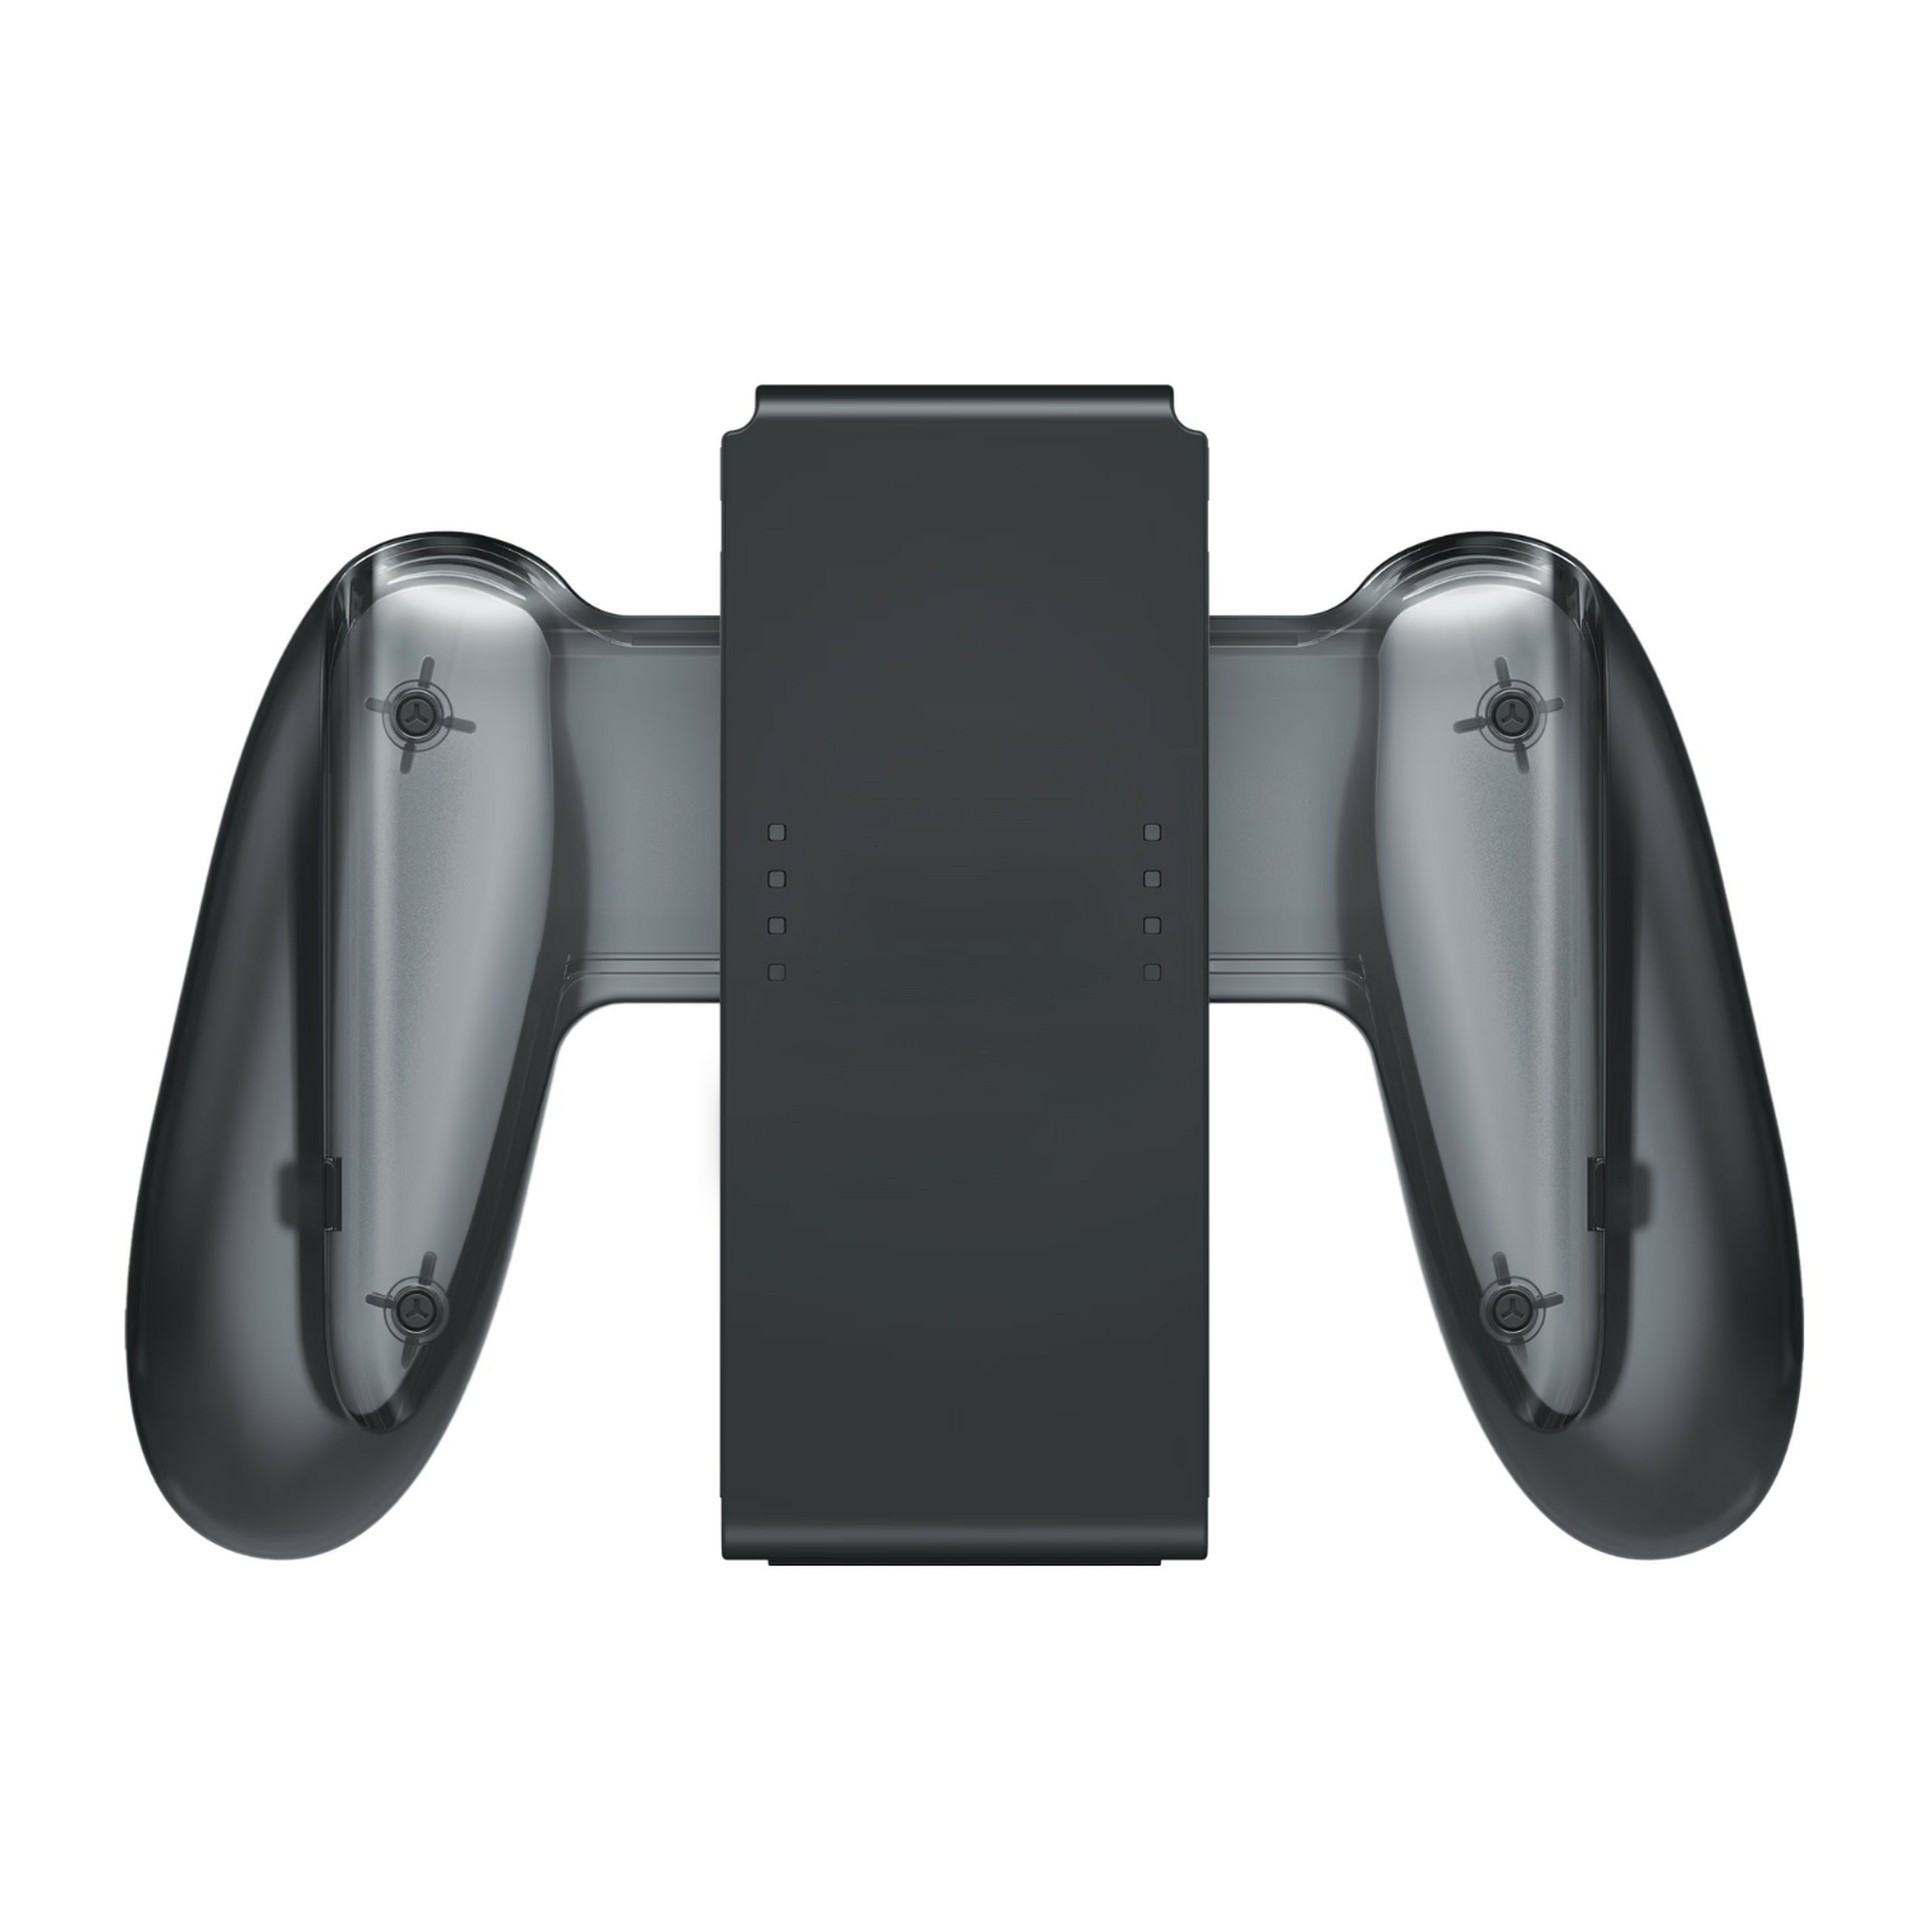 Oplaadbare Handgrip voor de Nintendo Switch Joy-Con Controllers - Nintendo Switch Hardware